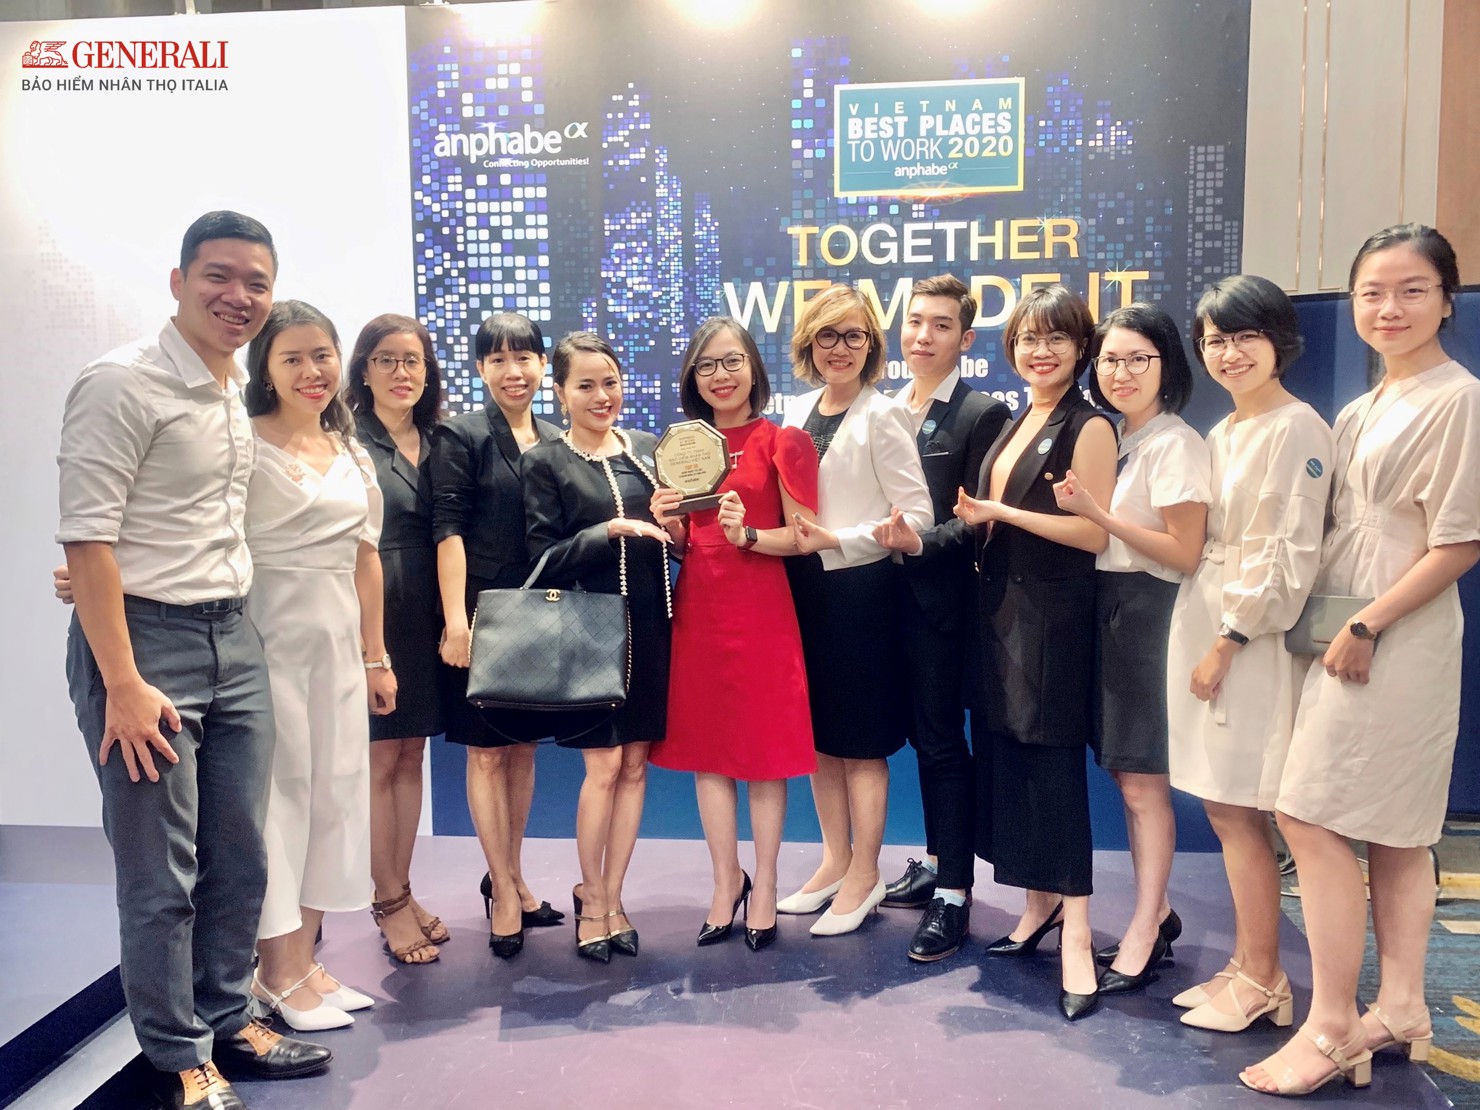 Với chiến lược trở thành “Người bạn trọn đời” của khách hàng, đối tác và nhân viên, Generali Việt Nam đã xây dựng được một đội ngũ năng động, sáng tạo, chuyên nghiệp và gắn kết.